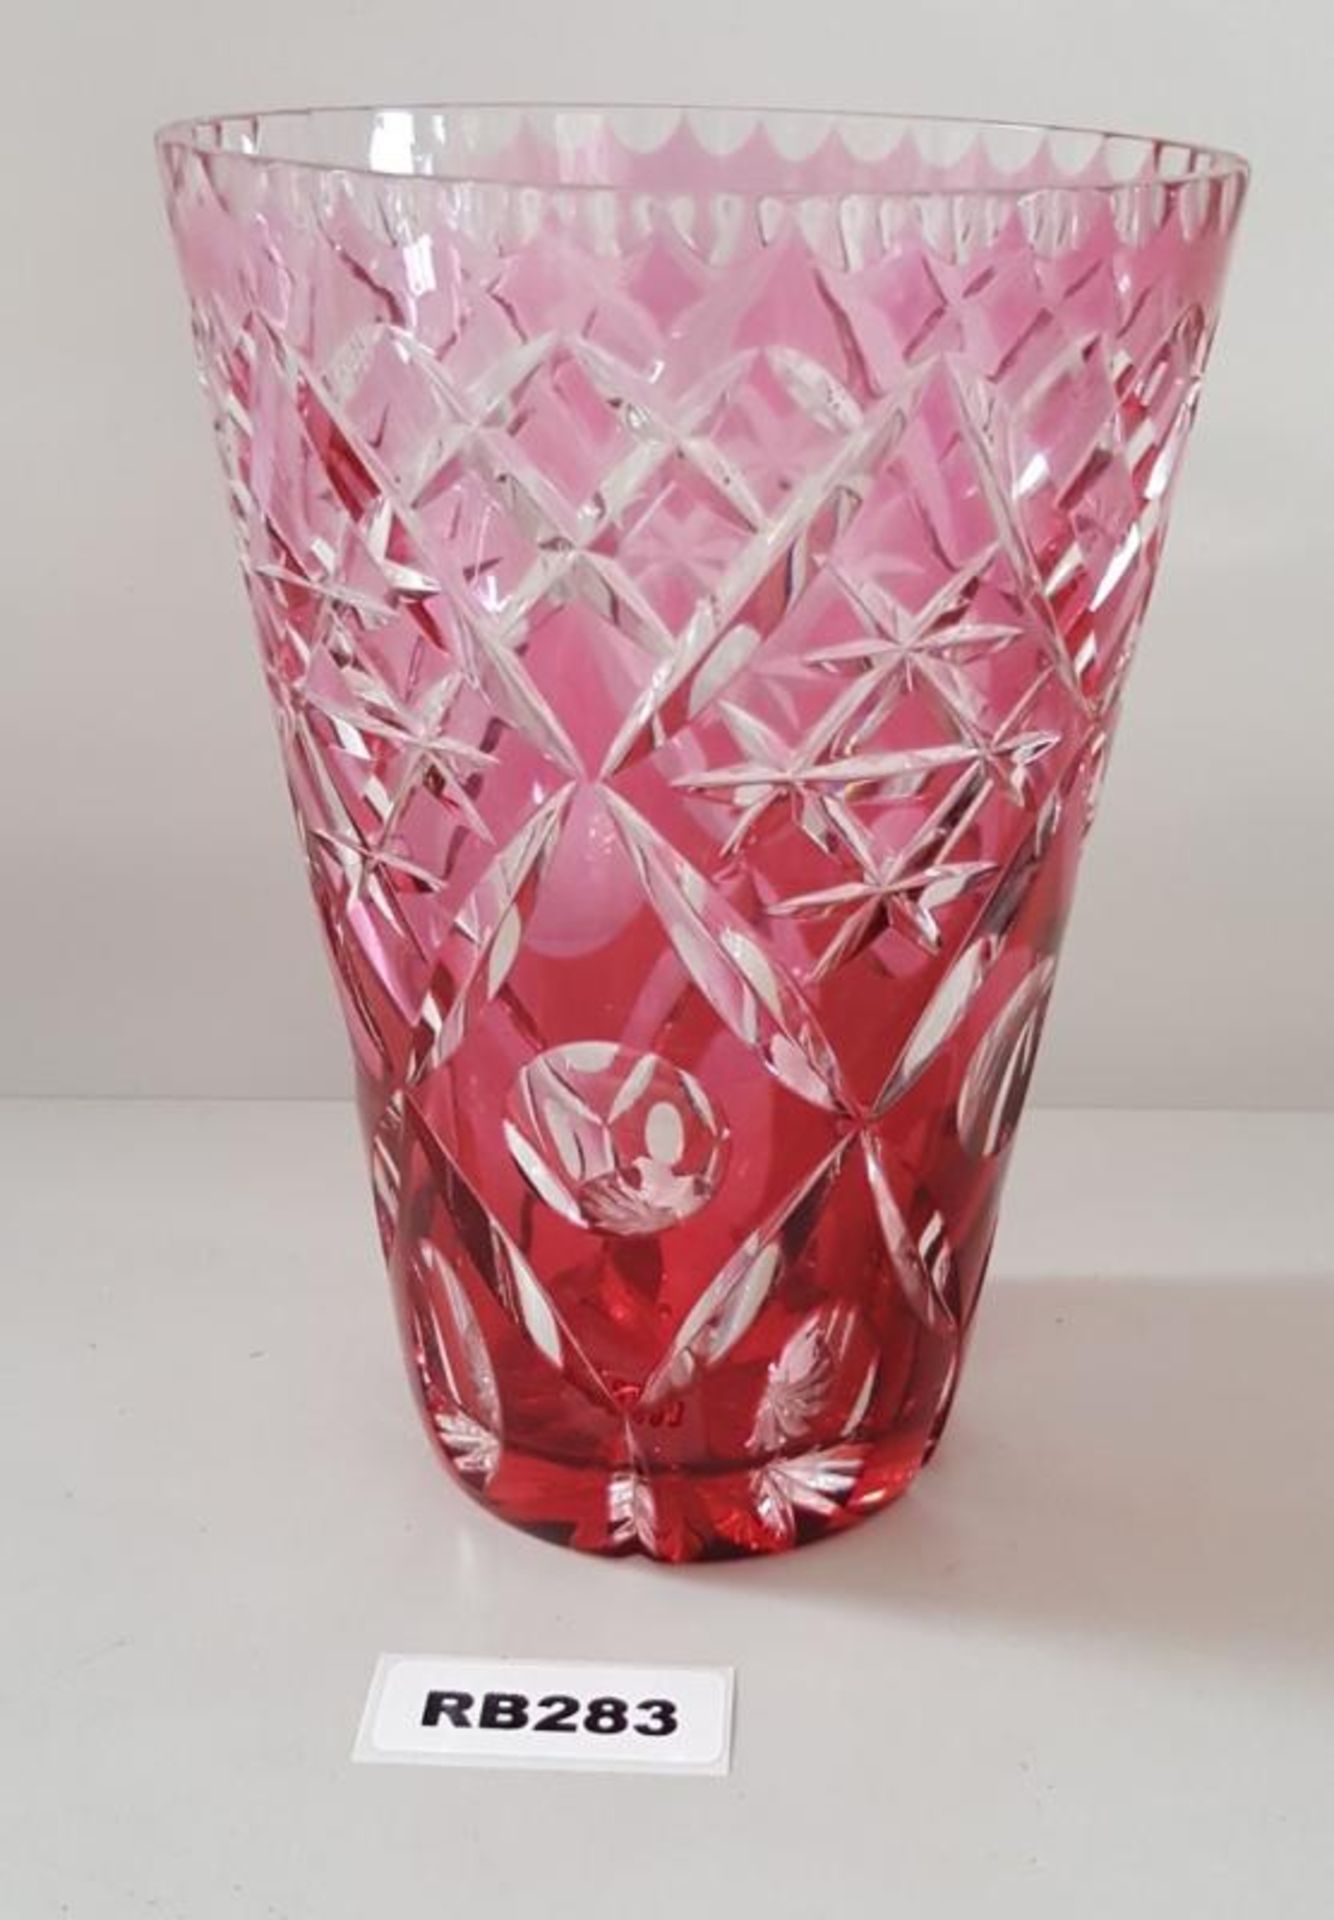 1 x Bohemian Cranberry Cut Glass Vase H20cm - Ref RB283 E - CL334 - Location: Altrincham WA14 NO VAT